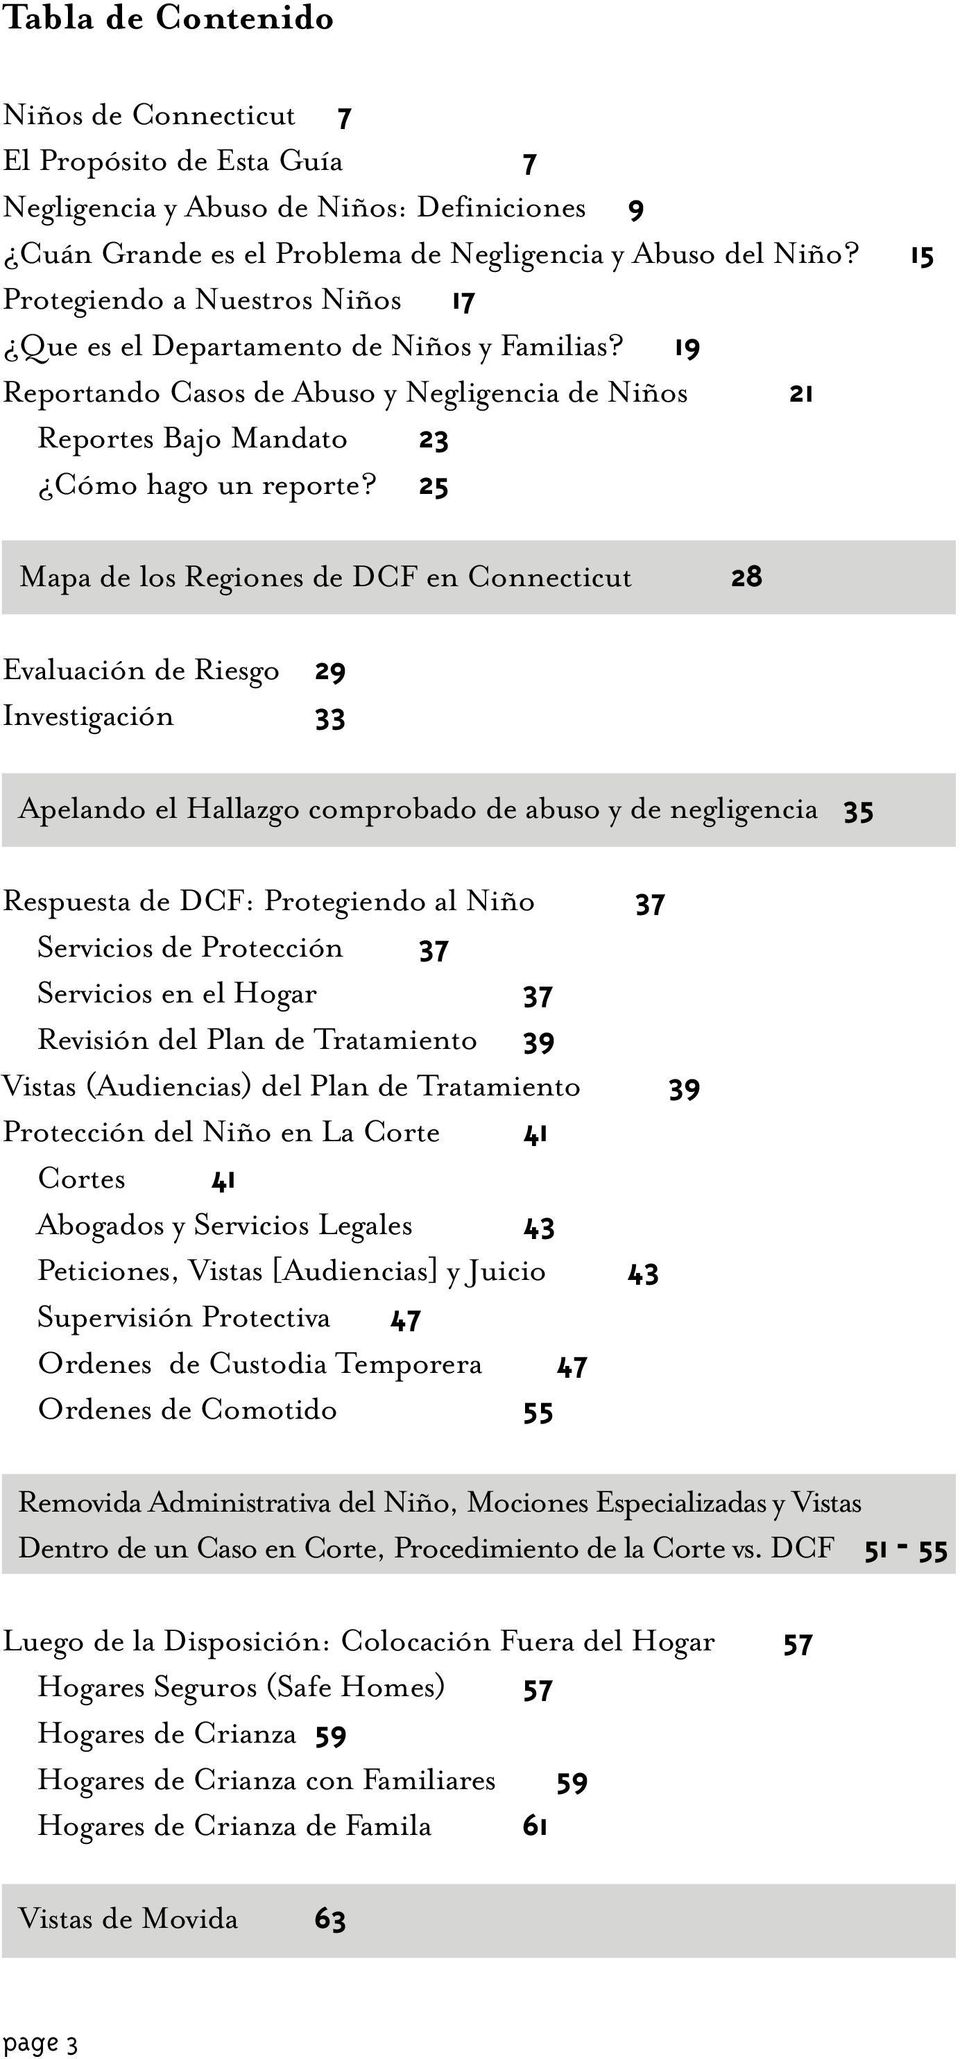 25 Mapa de los Regiones de DCF en Connecticut 28 Evaluación de Riesgo 29 Investigación 33 Apelando el Hallazgo comprobado de abuso y de negligencia 35 Respuesta de DCF: Protegiendo al Niño 37